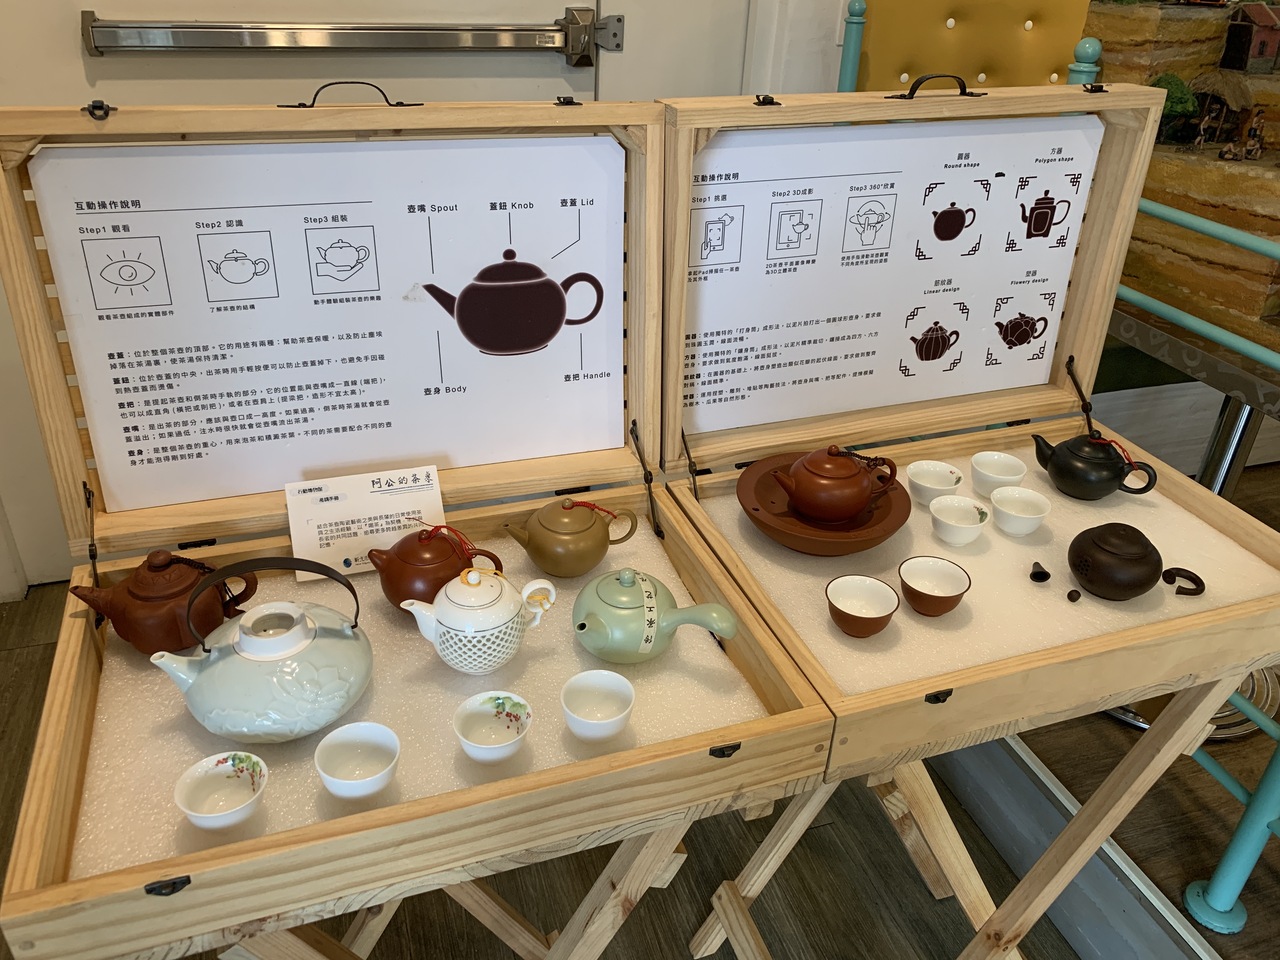 坪林茶业博物馆行动博物馆展示模组。图／新北文化局提供